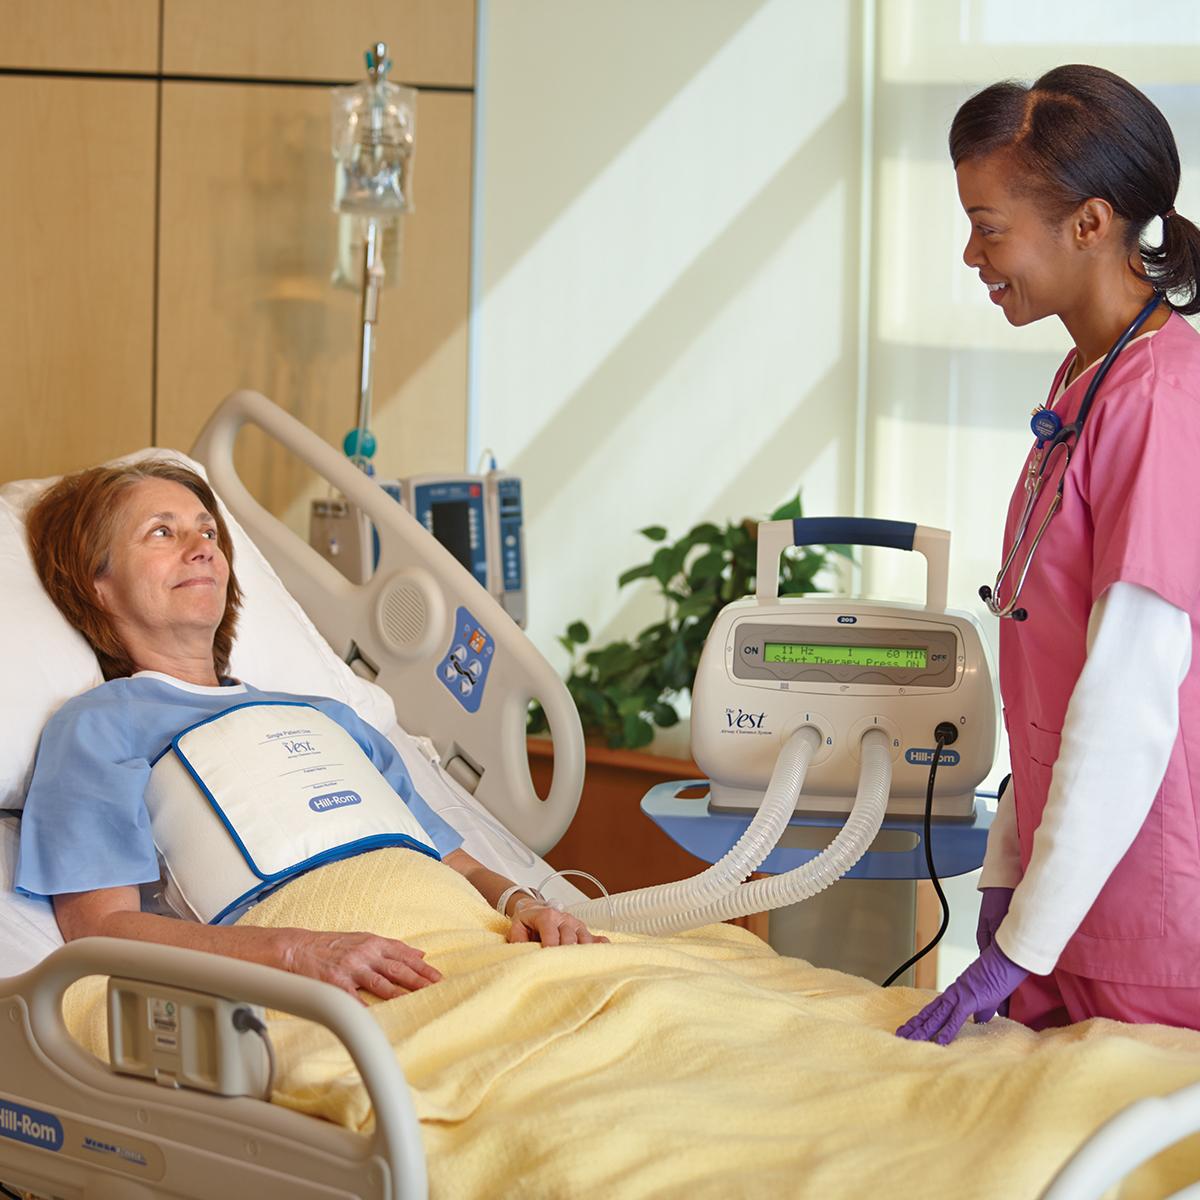 ผู้ป่วยบนเตียงของโรงพยาบาลได้รับการรักษาจากผ้าห่อตัวระบบ Vest รุ่น 205